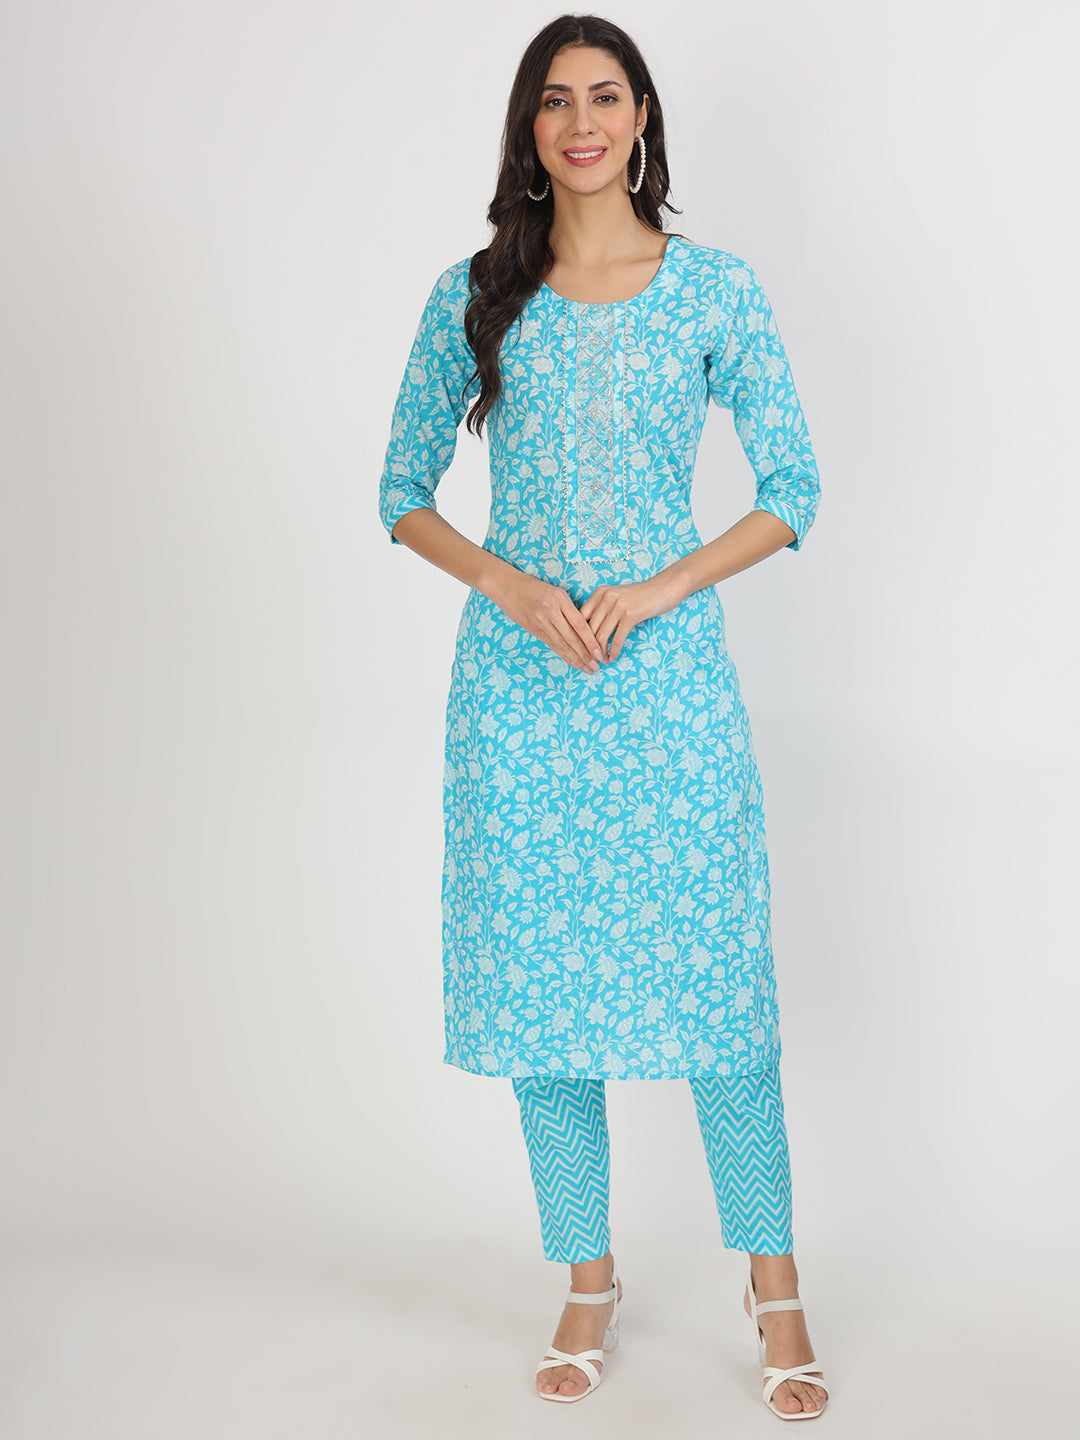 Divena turquoise blue Floral Print Cotton Kurta pants with Dupatta set for women